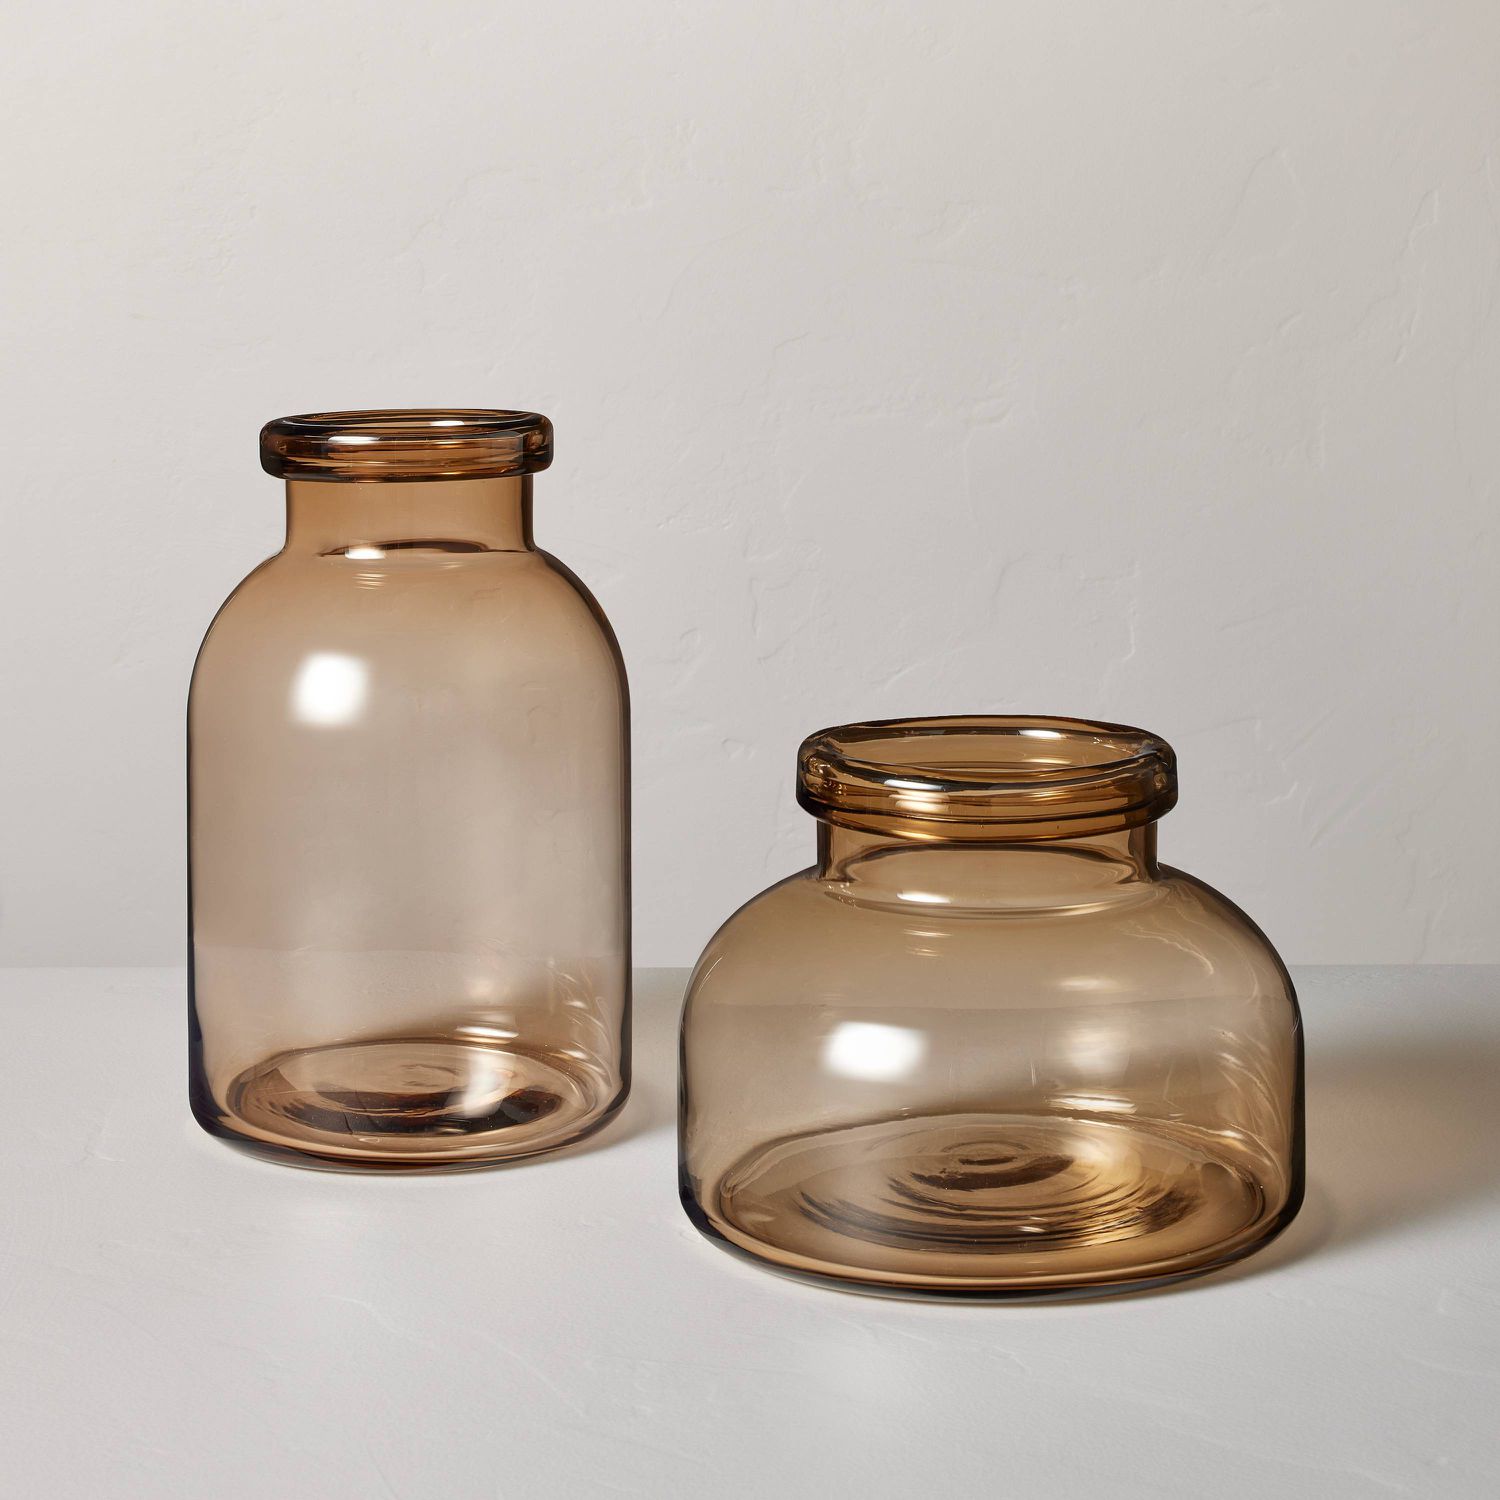 Brauner Glaskrug und Vase